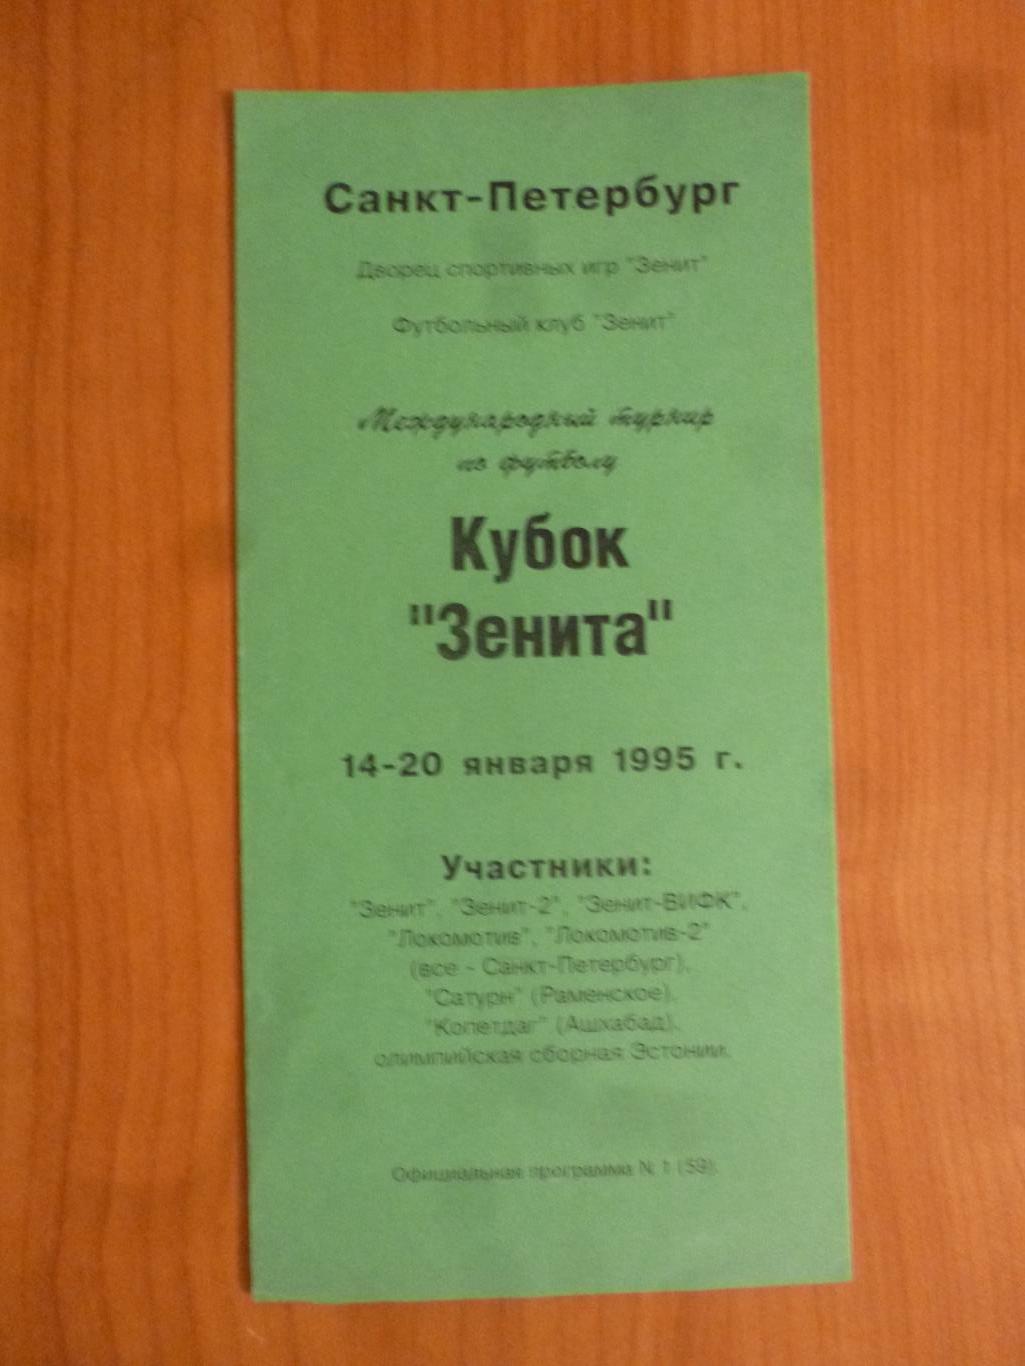 Кубок Зенита, Санкт-Петербург, 1995 год (зеленая). Участники в описании